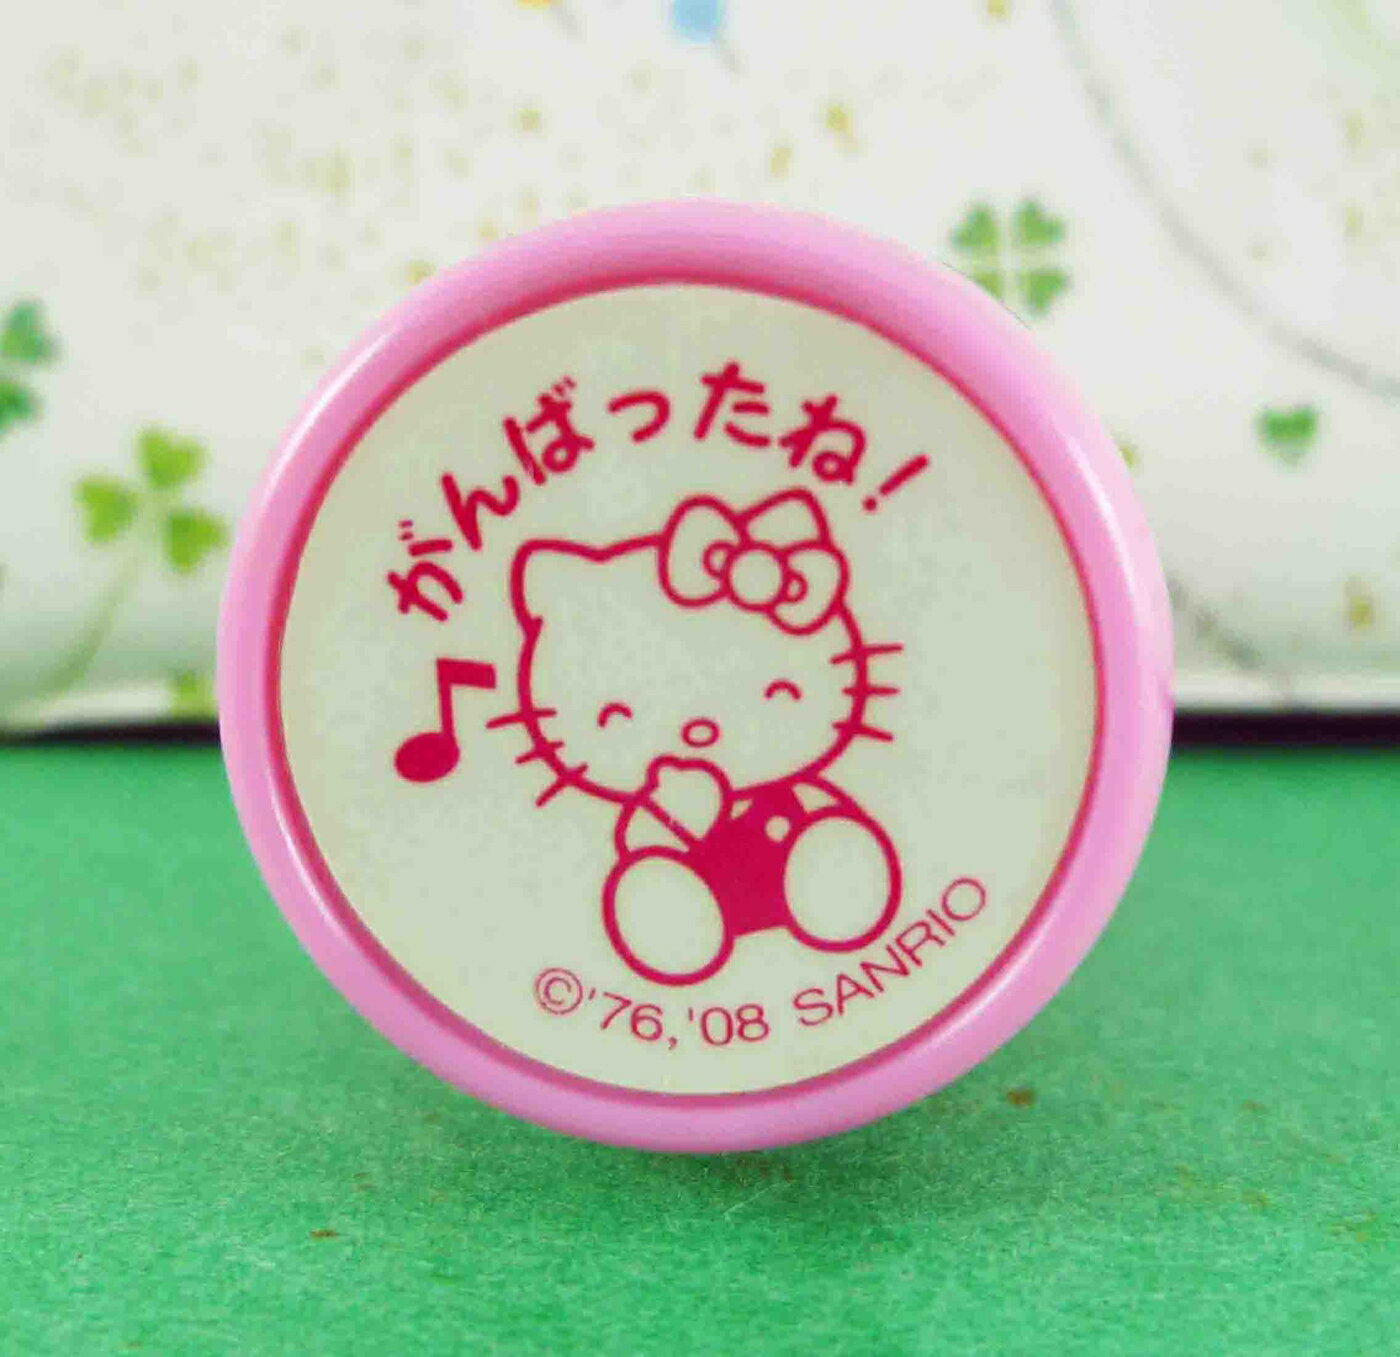 【震撼精品百貨】Hello Kitty 凱蒂貓 KITTY筆套印章-音符-粉色 震撼日式精品百貨